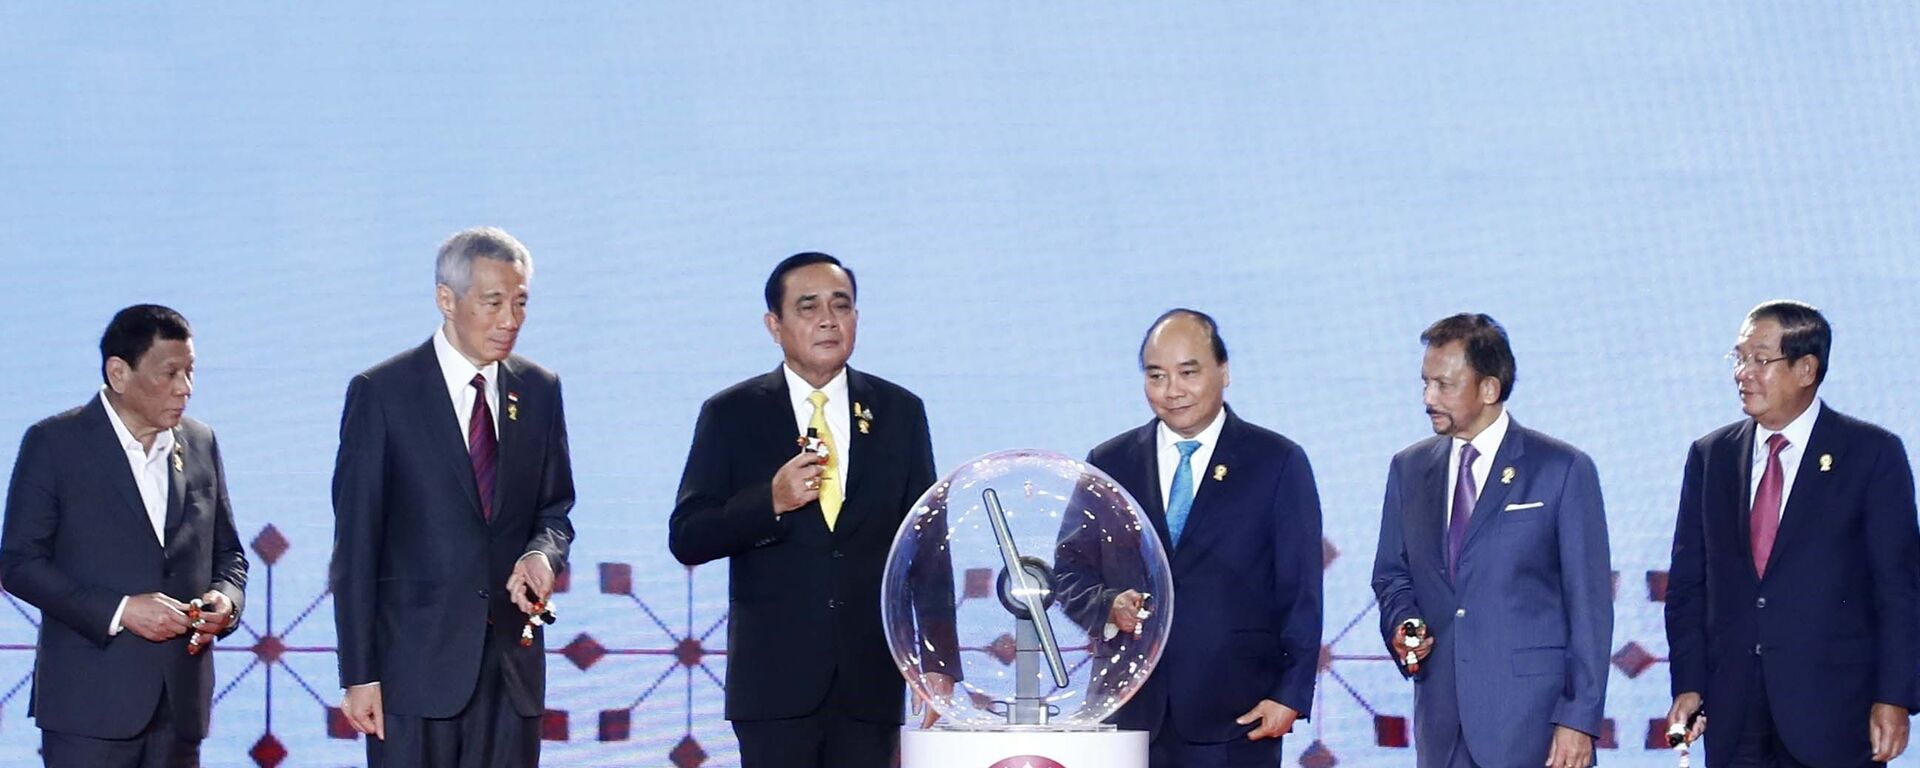  Thủ tướng Nguyễn Xuân Phúc dự khai mạc Hội nghị cấp cao ASEAN lần thứ 34 - Sputnik Việt Nam, 1920, 19.07.2019